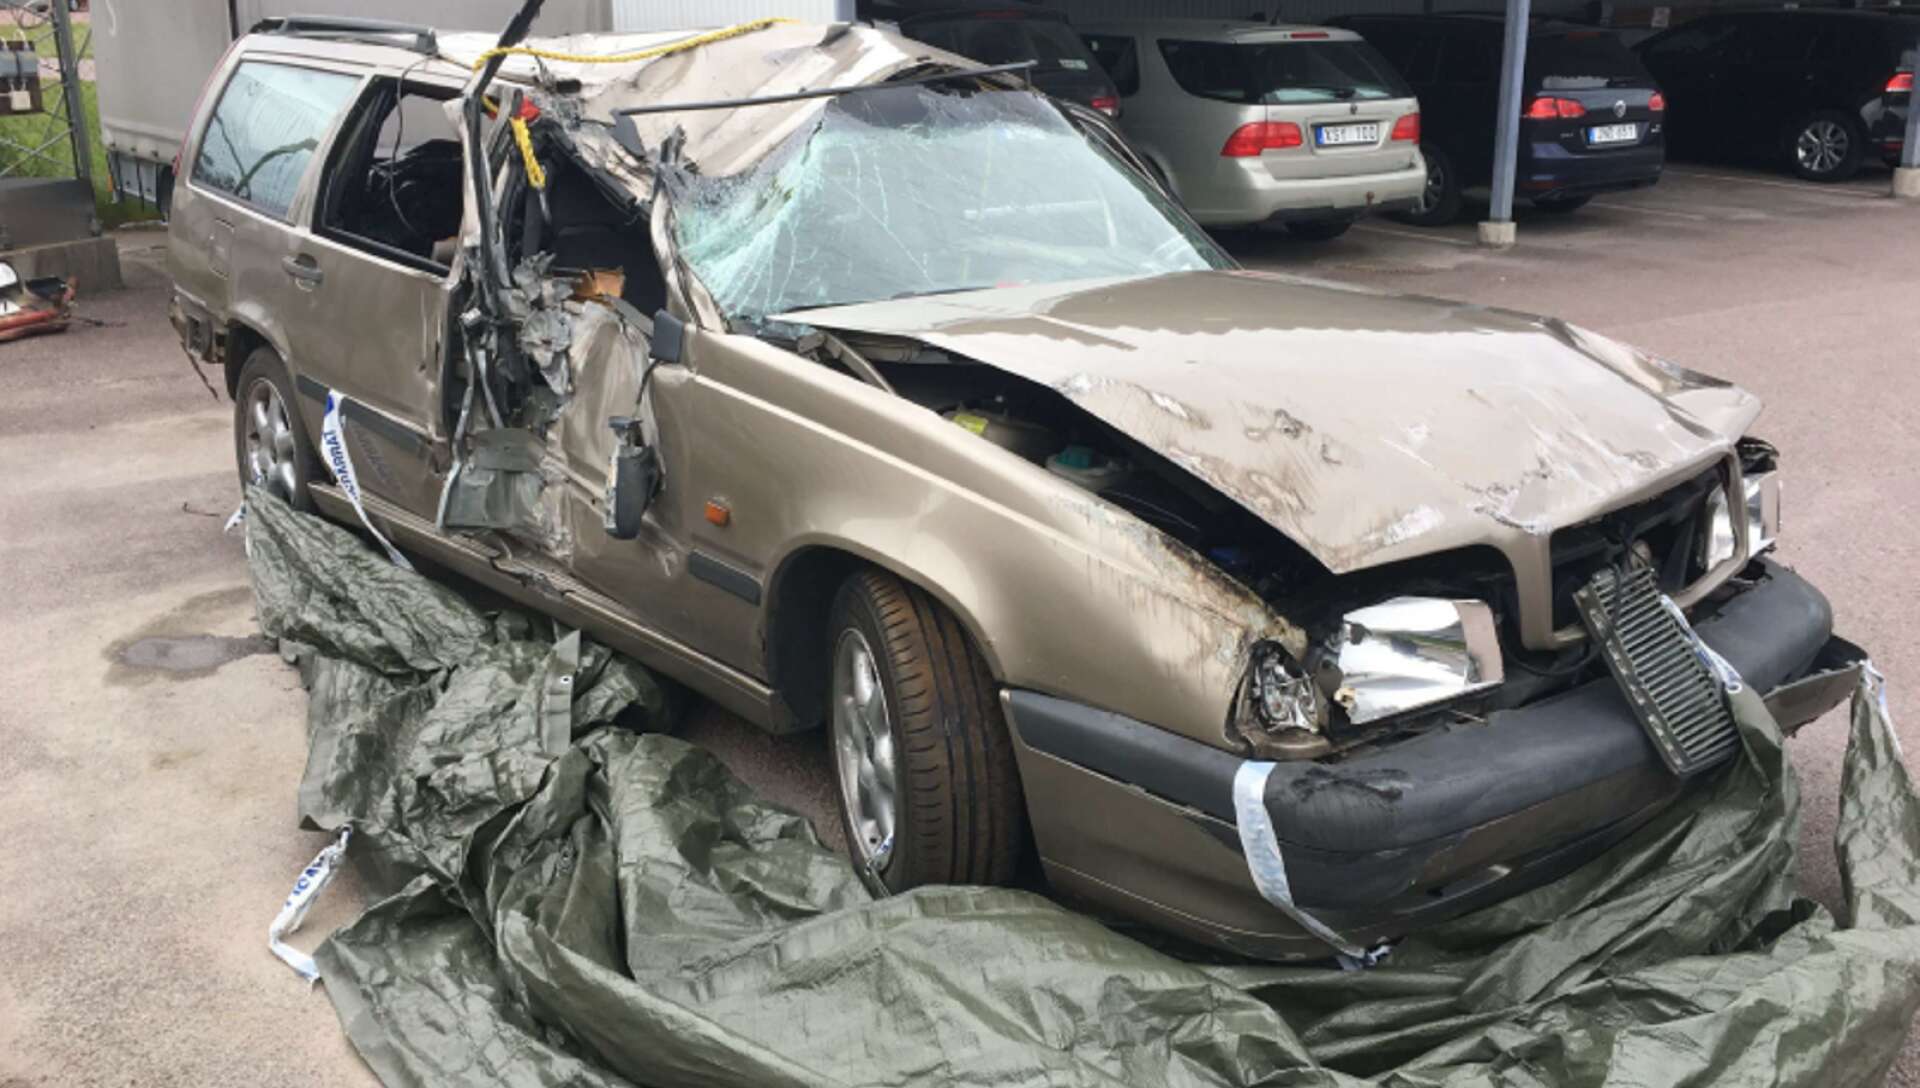 Den ljusbruna Volvon demolerades på passagerarsidan vid olyckan utanför Brattfors.